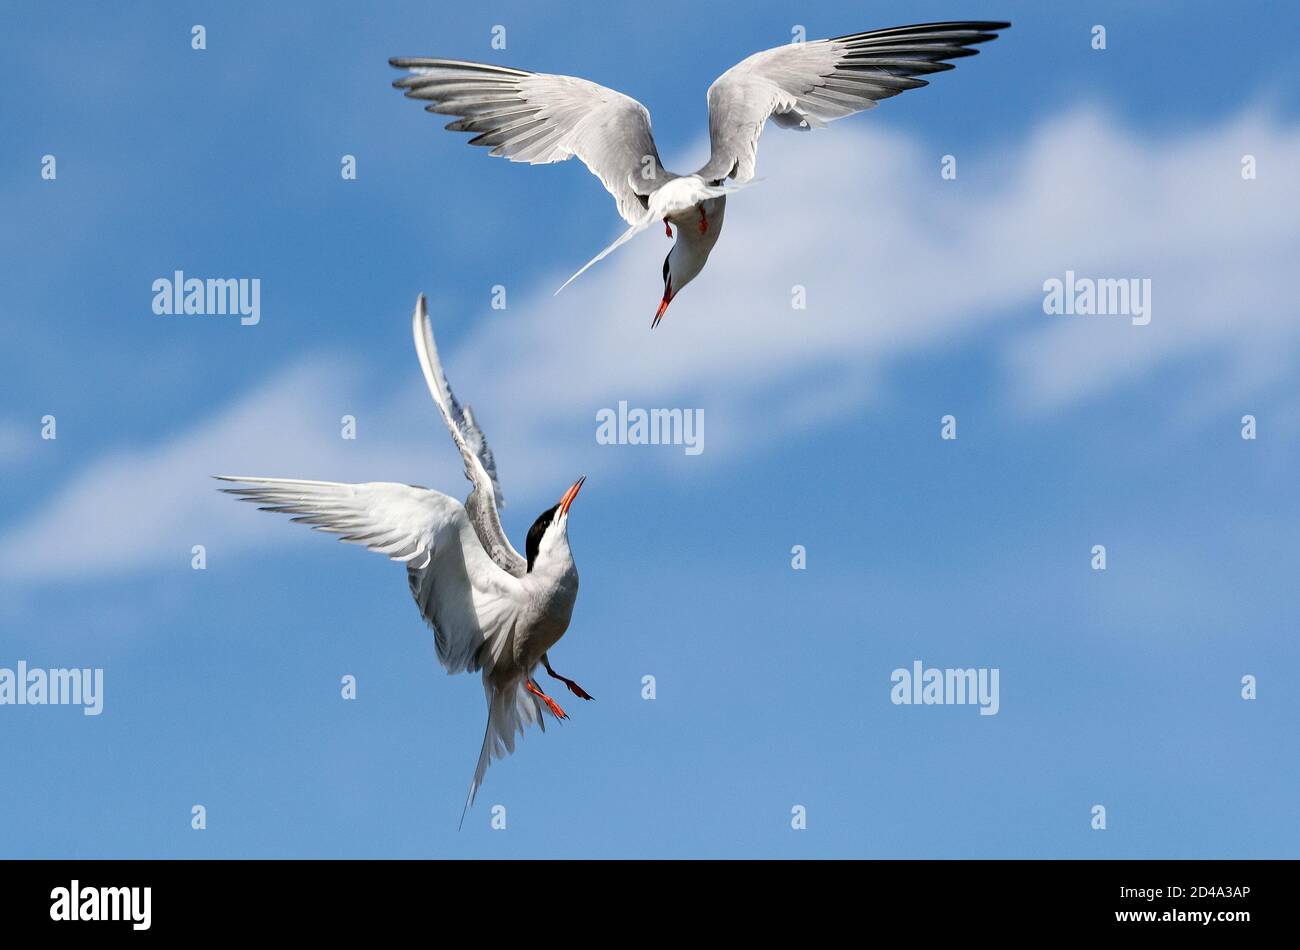 Gewöhnliche Terns (Sterna hirundo) interagieren im Flug. Erwachsene Seeschwalben im Flug auf dem blauen Himmel Hintergrund Stockfoto